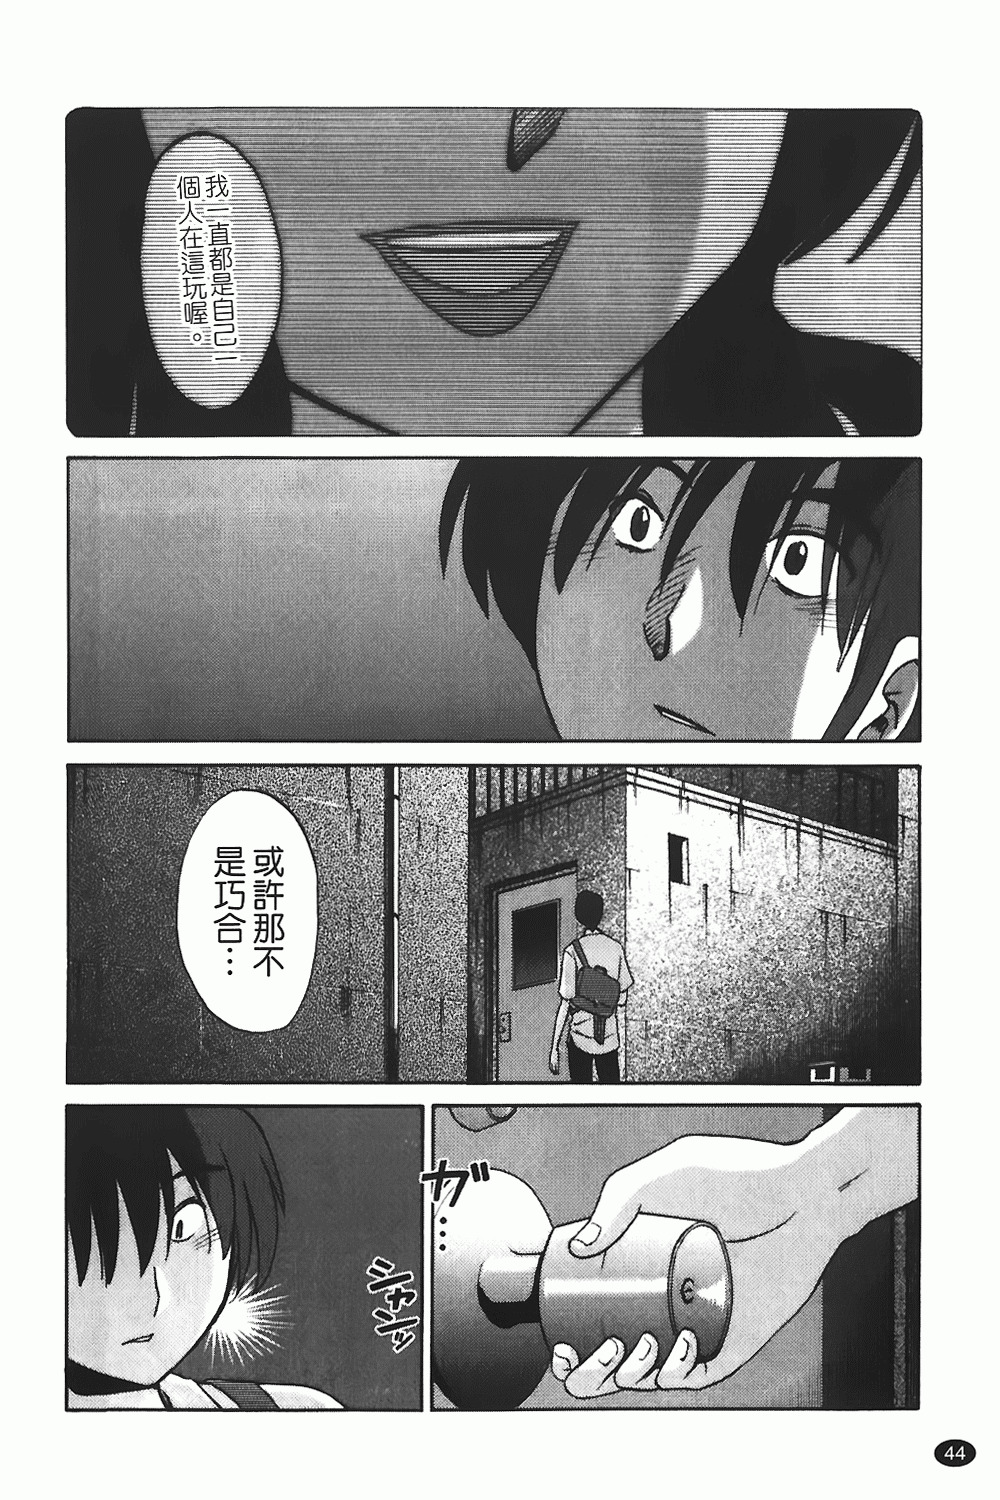 [TsuyaTsuya] Monokage no Iris 1 | 陰影中的伊利斯 1 [Chinese] page 41 full